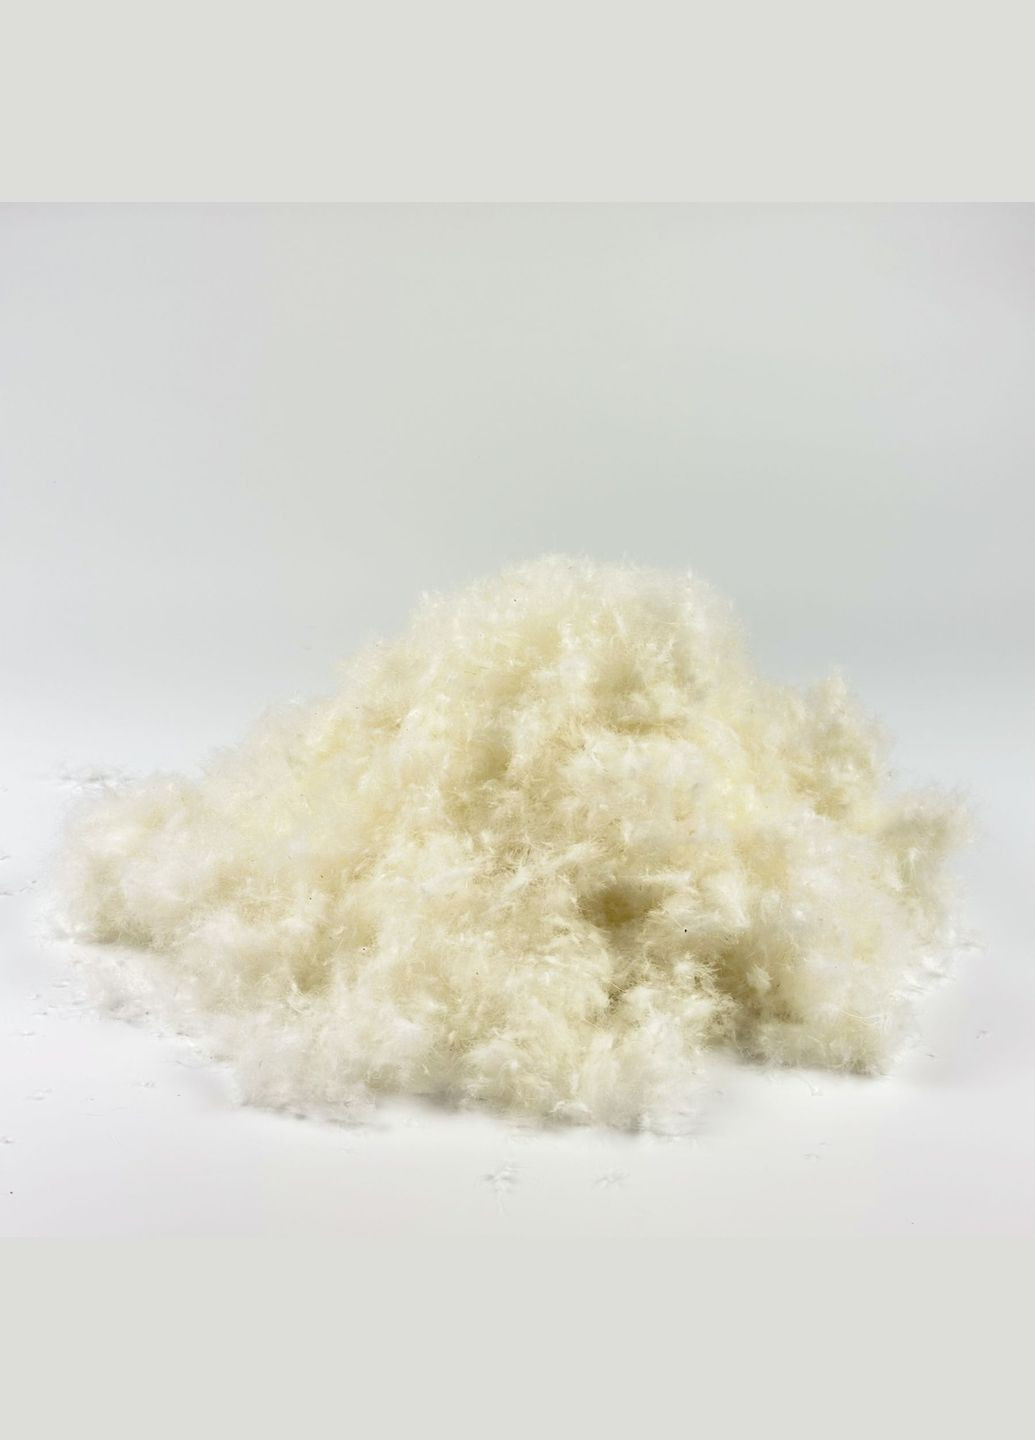 Демисезонное одеяло со 100% белым гусиным пухом двуспальное ROSTER 172х205 (17220511W) Iglen (282313219)